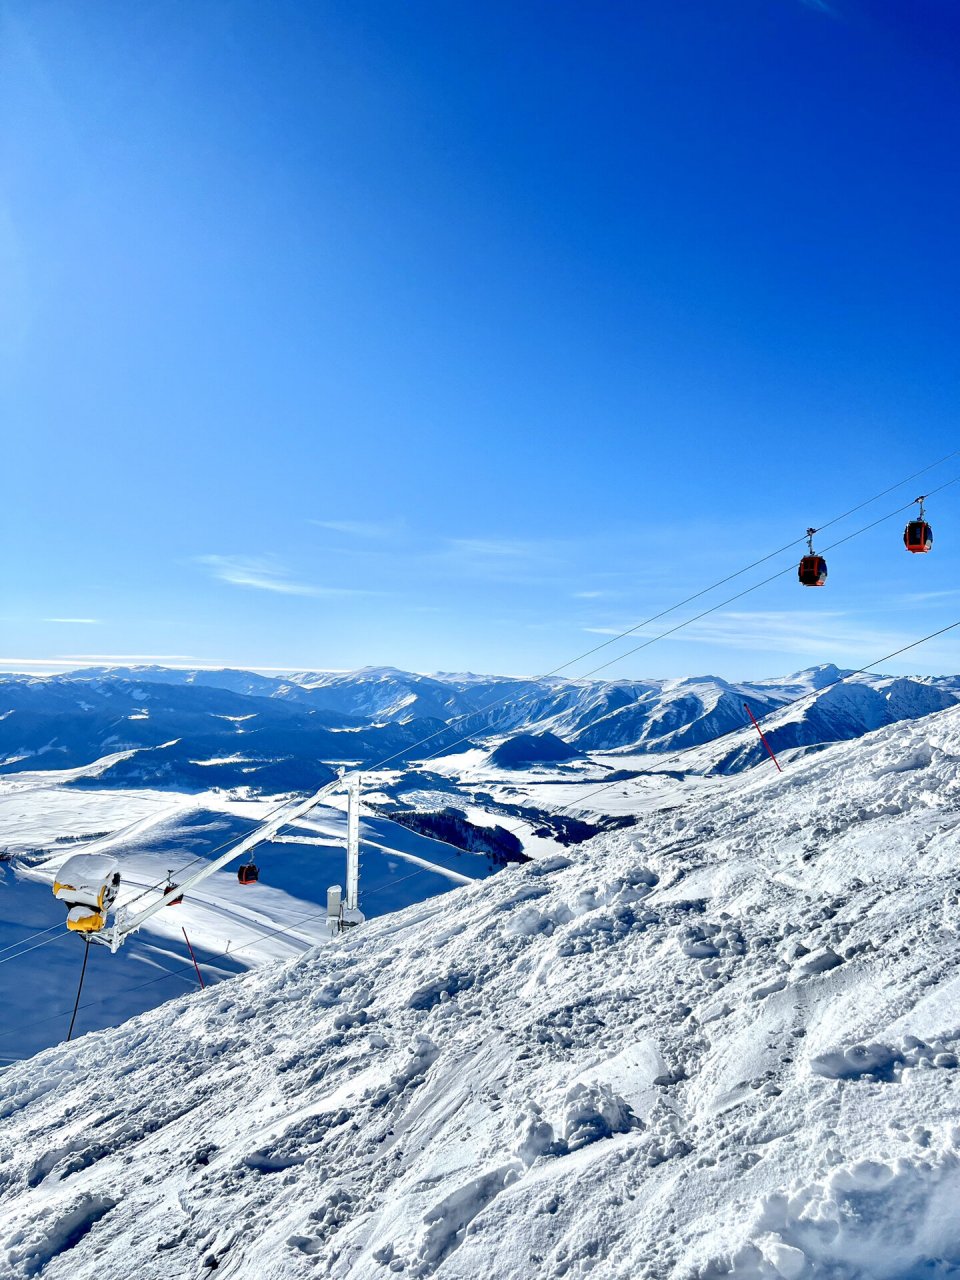 禾木吉克普林滑雪场 禾木吉克普林滑雪场,位于新疆阿勒泰地区喀纳斯